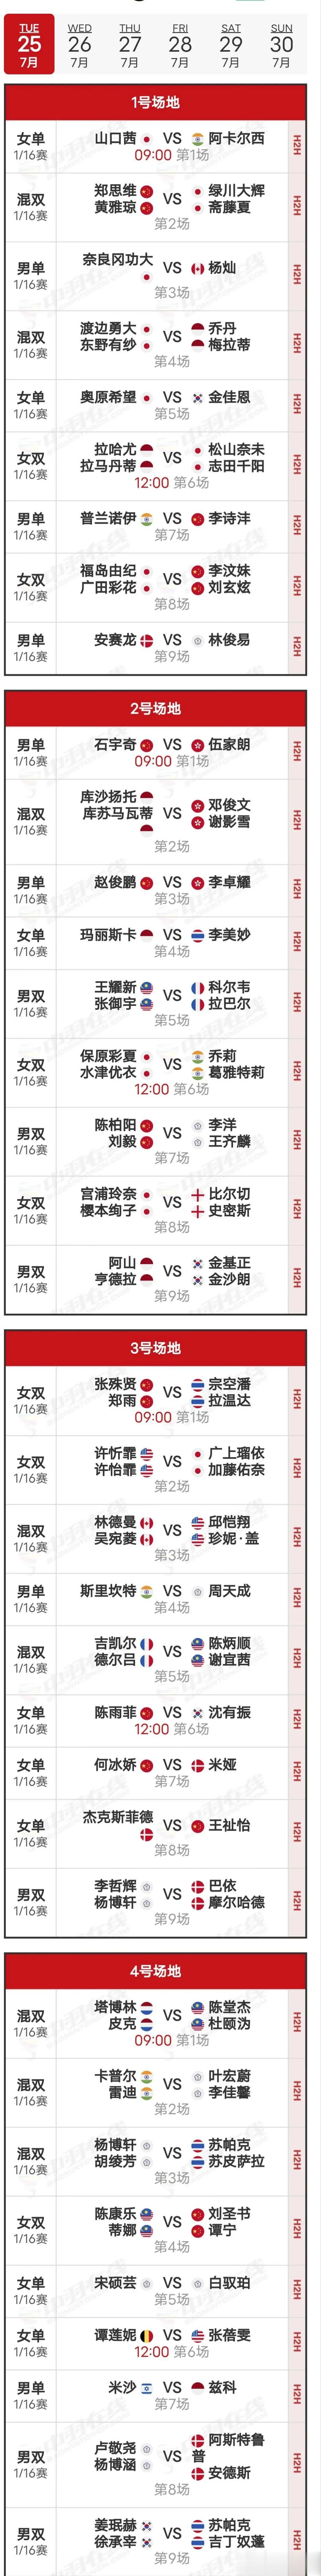  25日赛程
     比赛首日于北京时间25日9:00开赛，国羽共有11场比赛